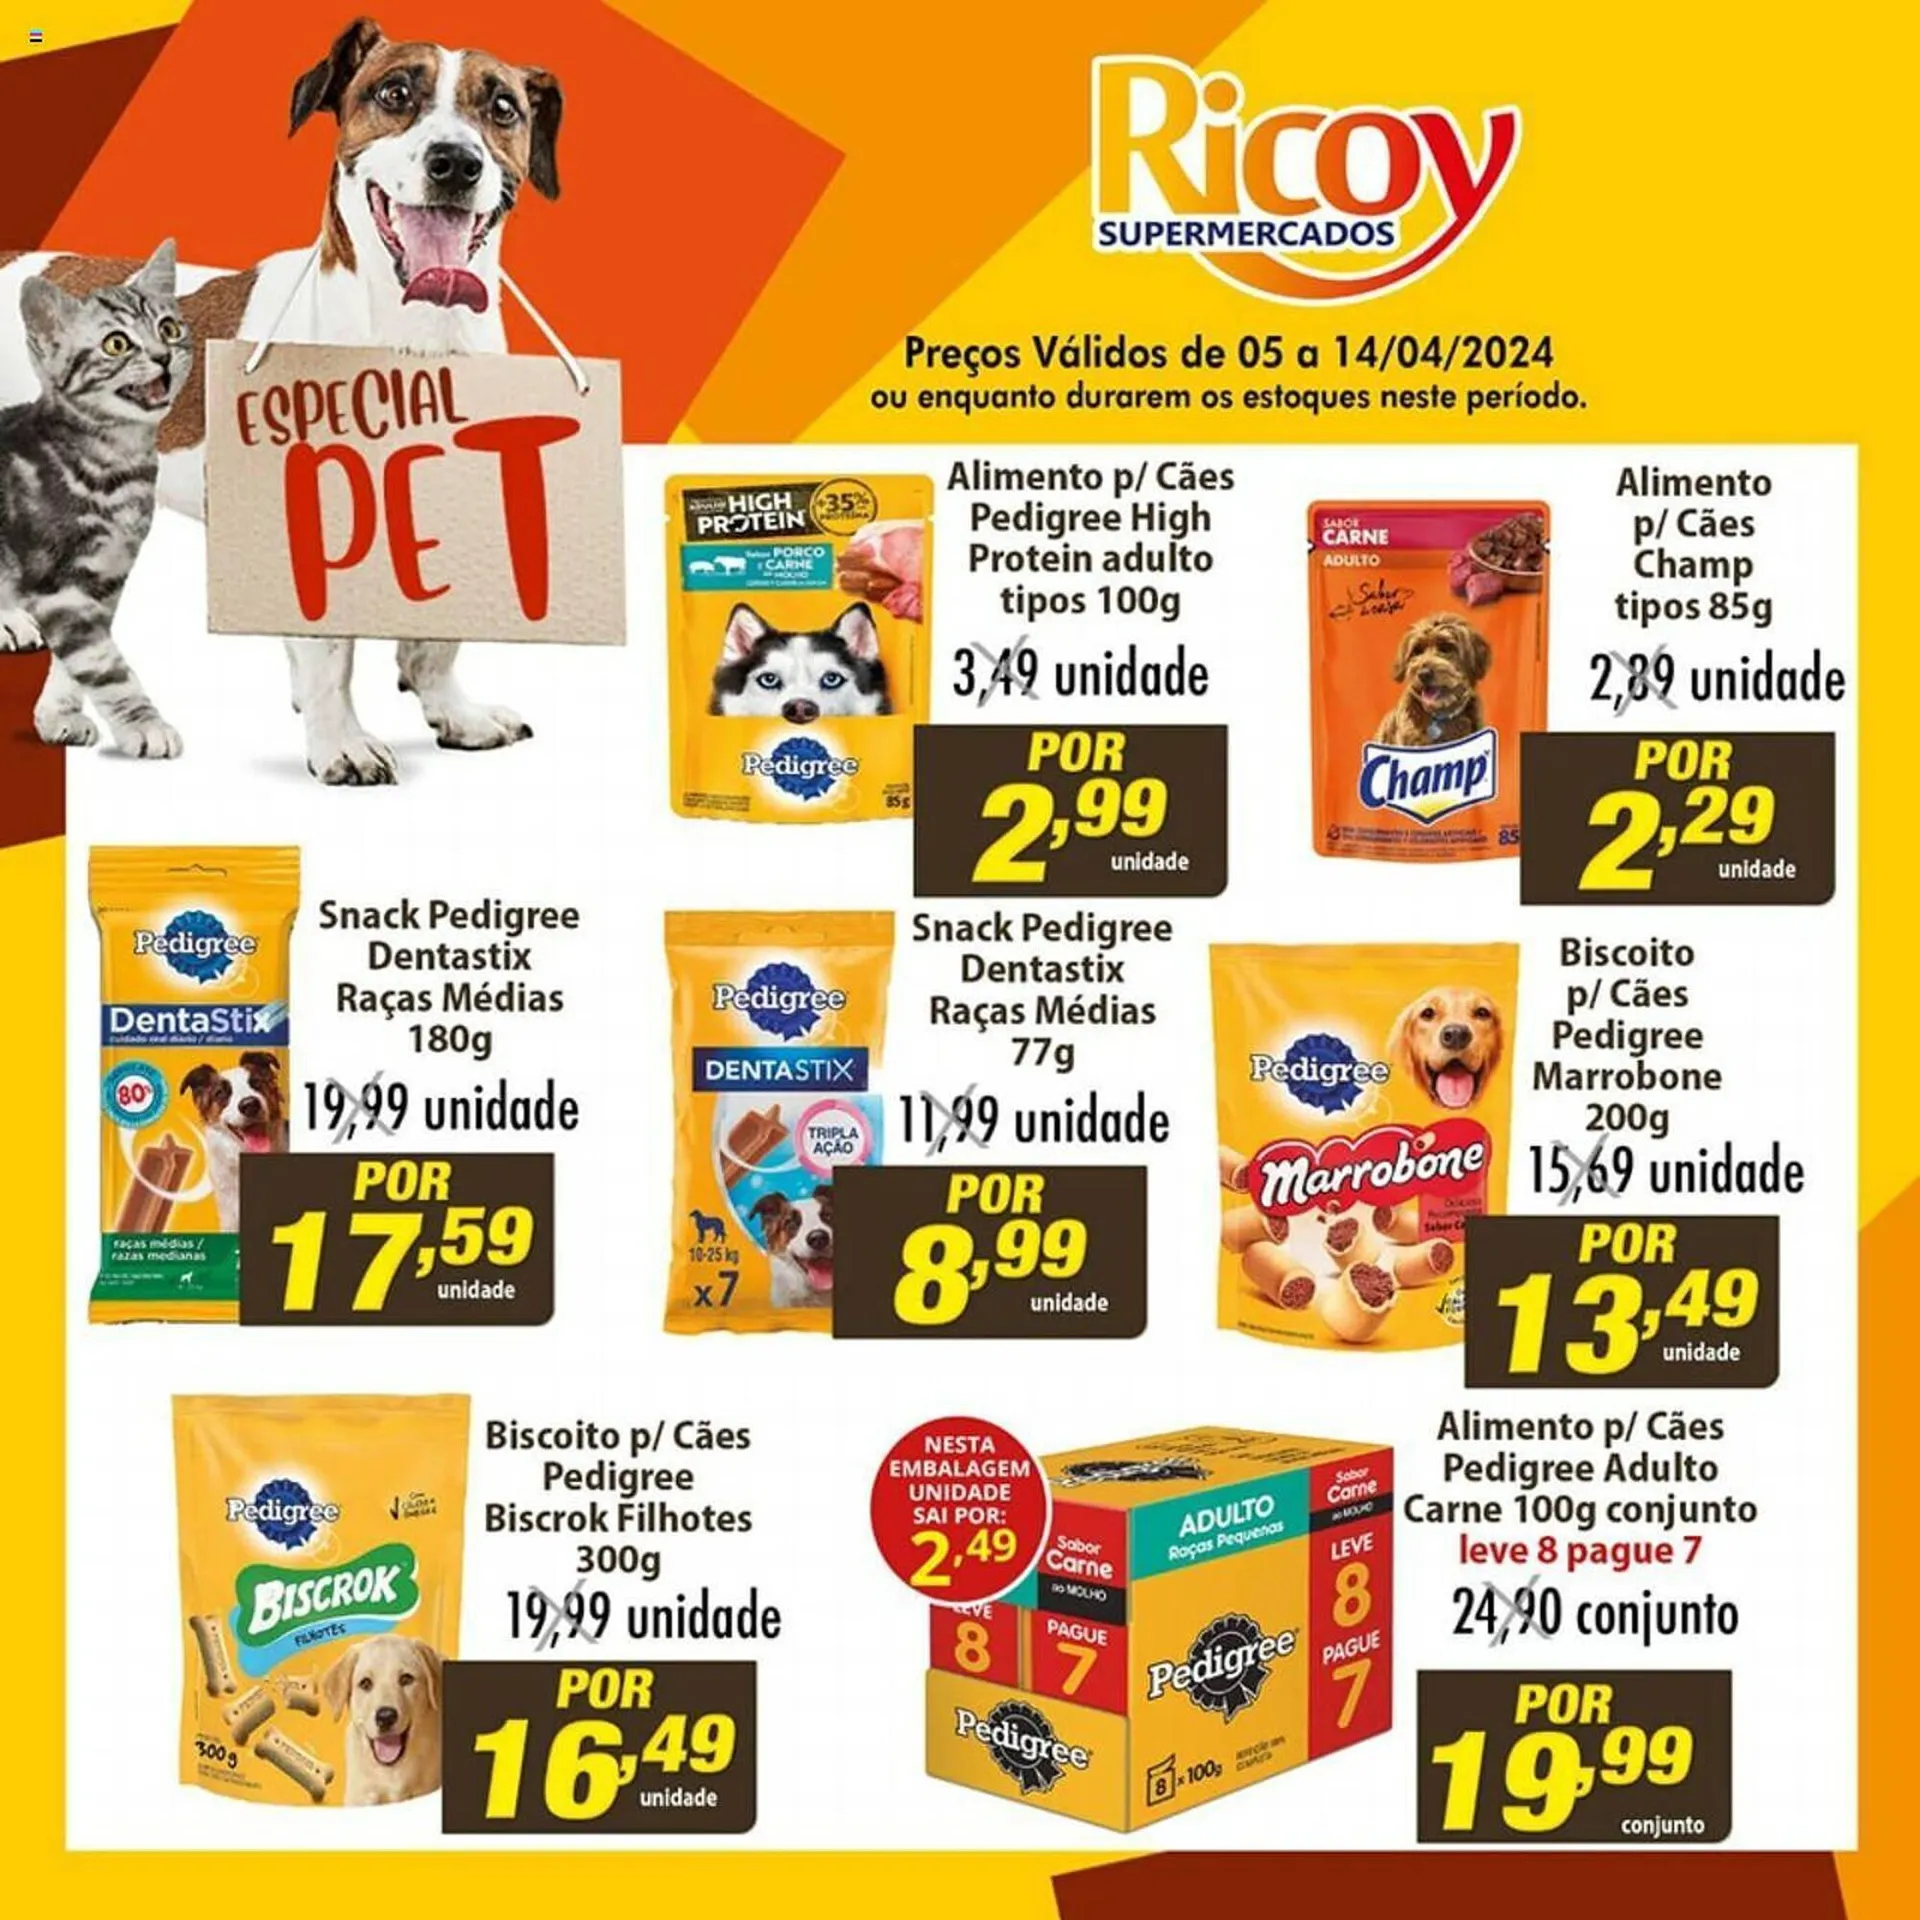 Encarte de Catálogo Ricoy Supermercados 5 de abril até 14 de abril 2024 - Pagina 1